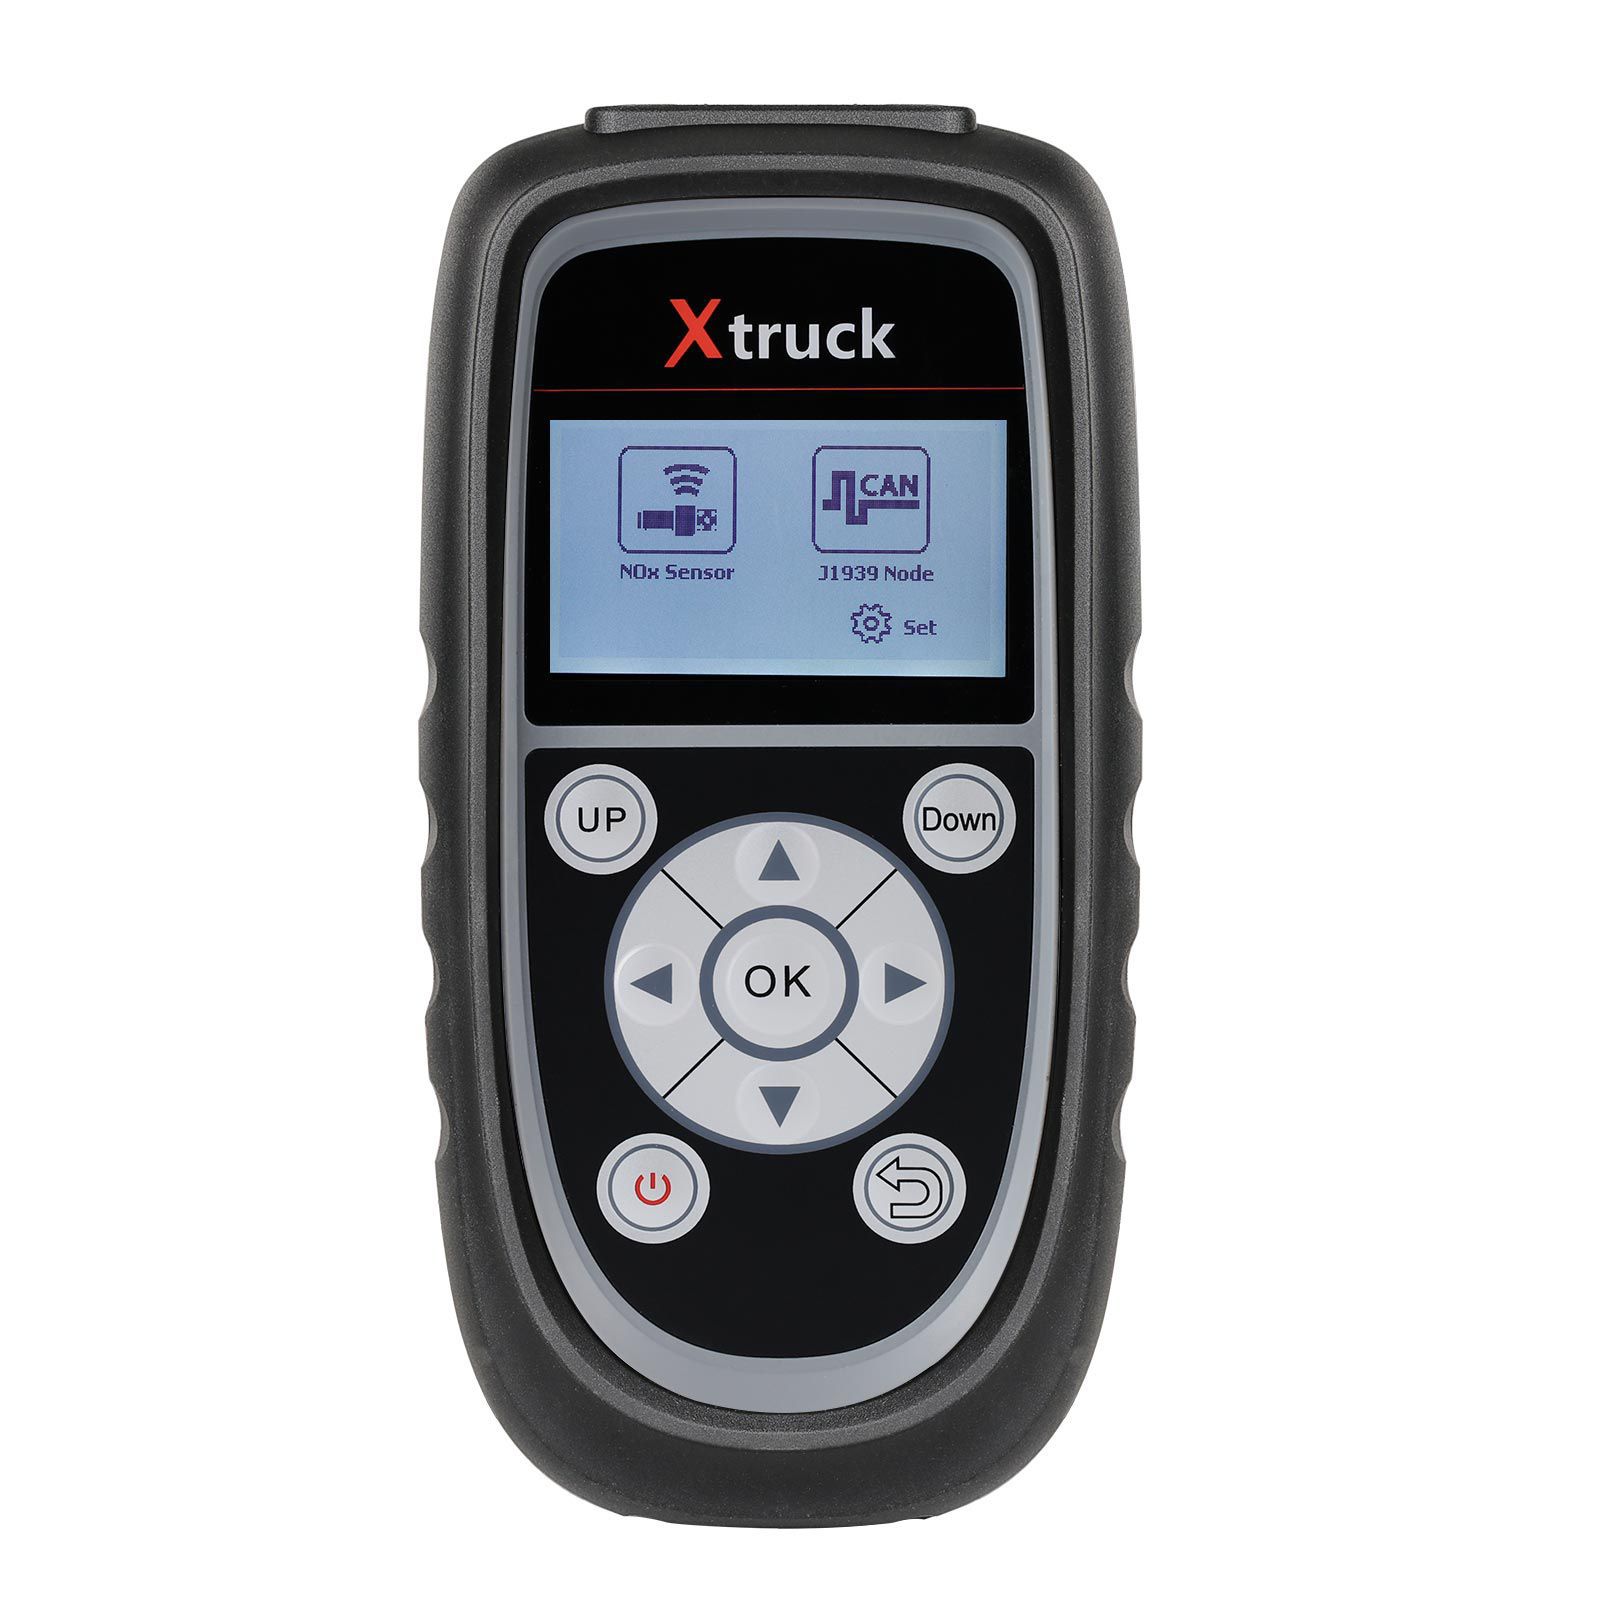 Xtruck y005 détecteur de capteur d'oxygène d'azote voiture balise machine urée pompe détecteur réparation automatique urée buse pompe outil de diagnostic